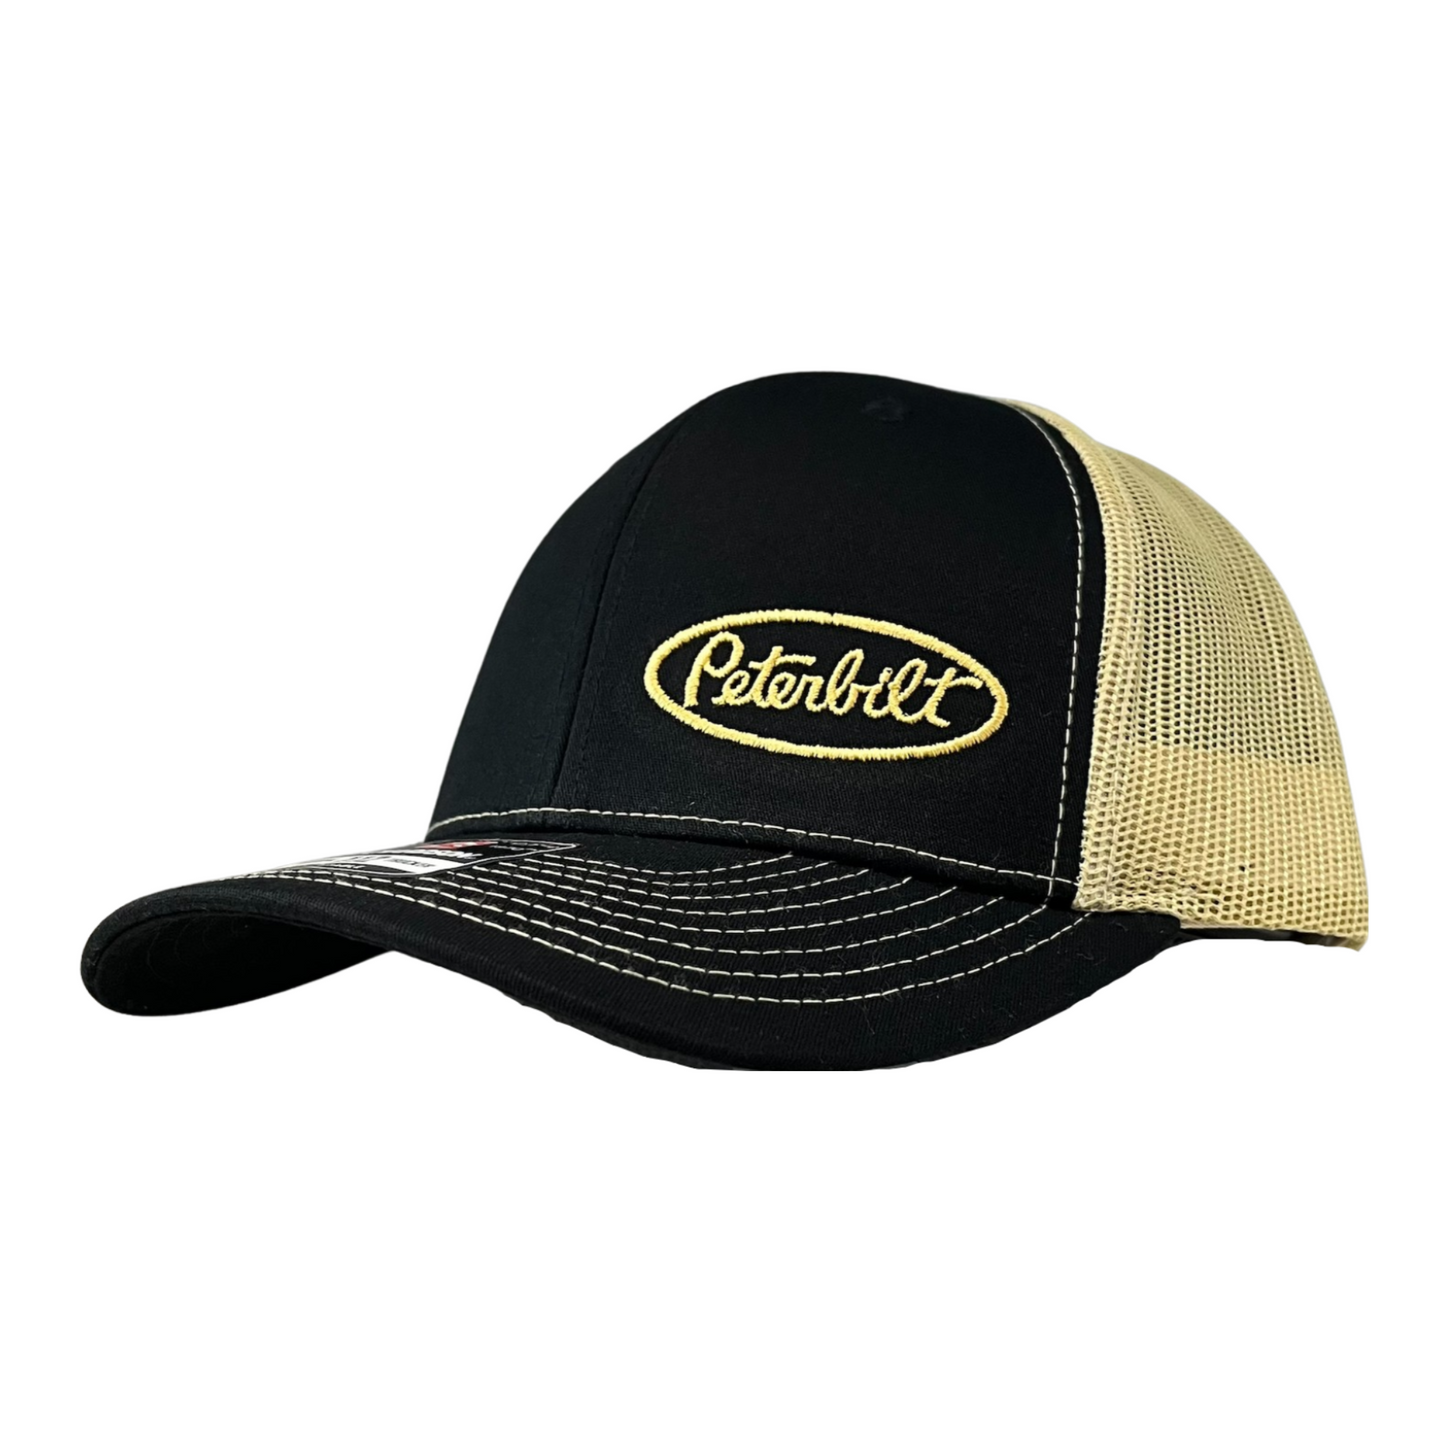 Classic Black and Gold Peterbilt logo Trucker Cap